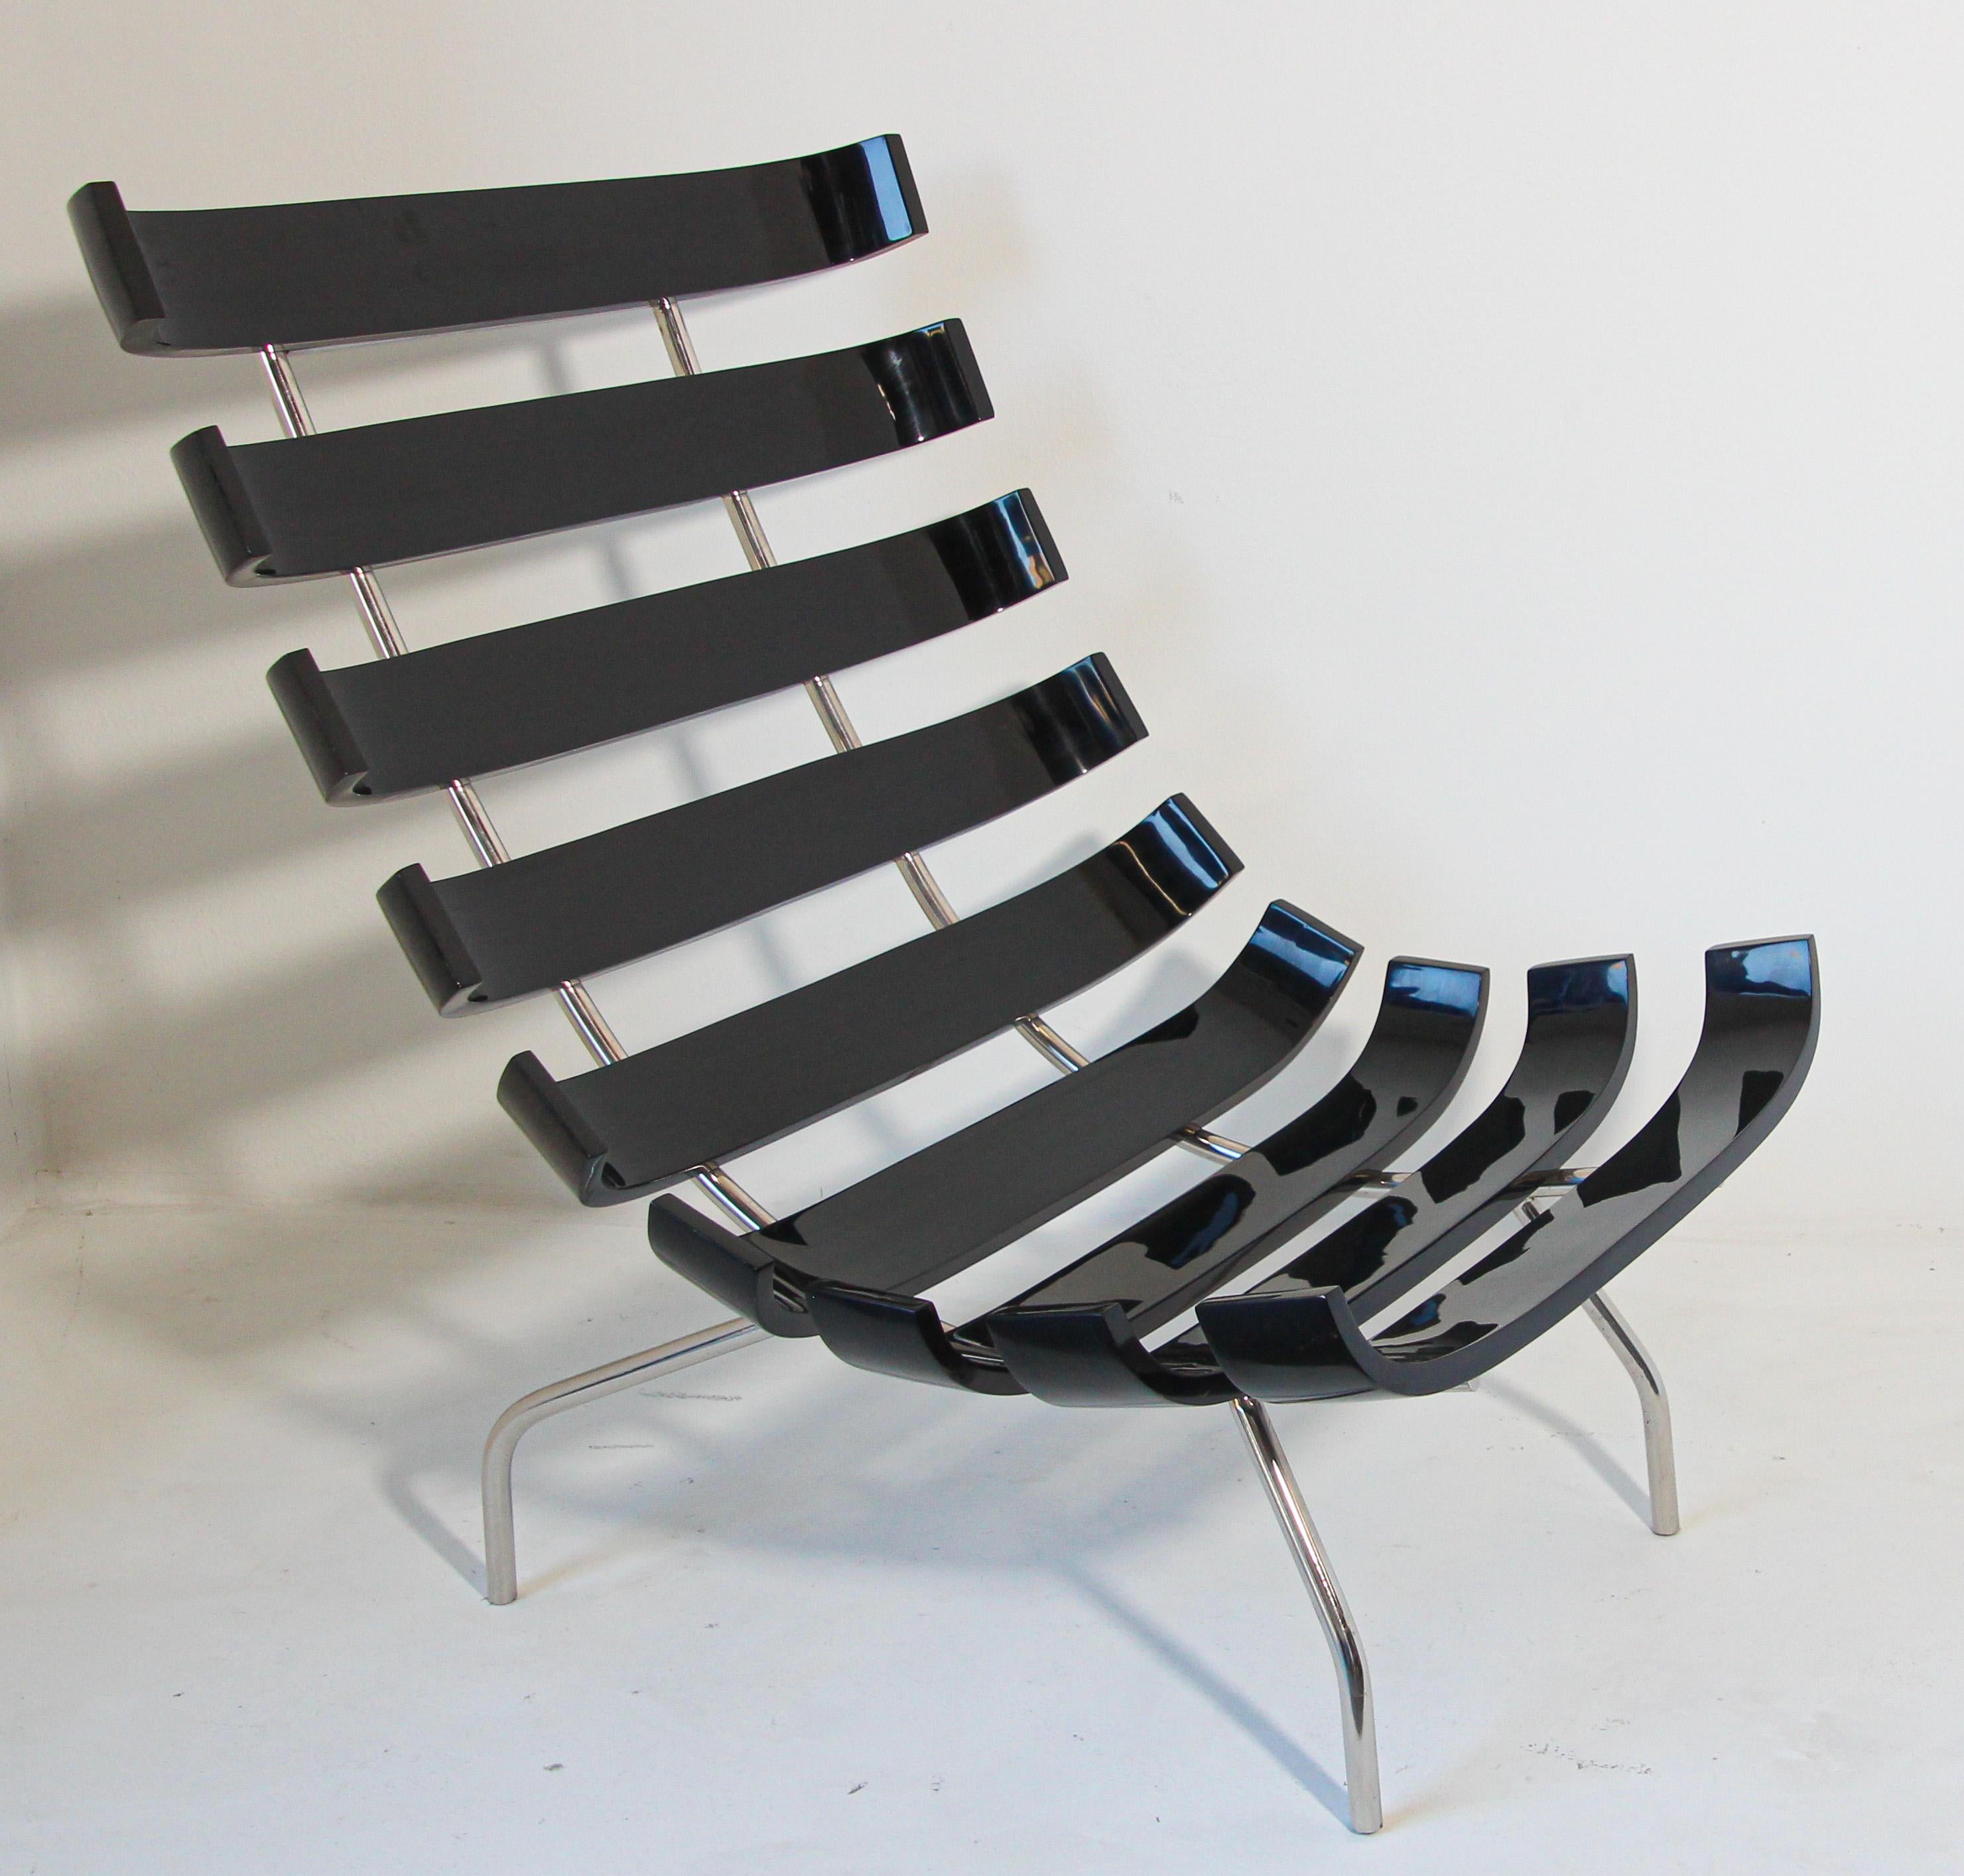 Martin Eisler Carlo Hauner Chaise de salon style Costela en laque noire.
Conçu à l'origine par Martin Eisler en 1952, c'est une icône du design brésilien des années 1950.
Chaise de salon Costela de Martin Eisler et Carlo Hauner. La chaise Costela